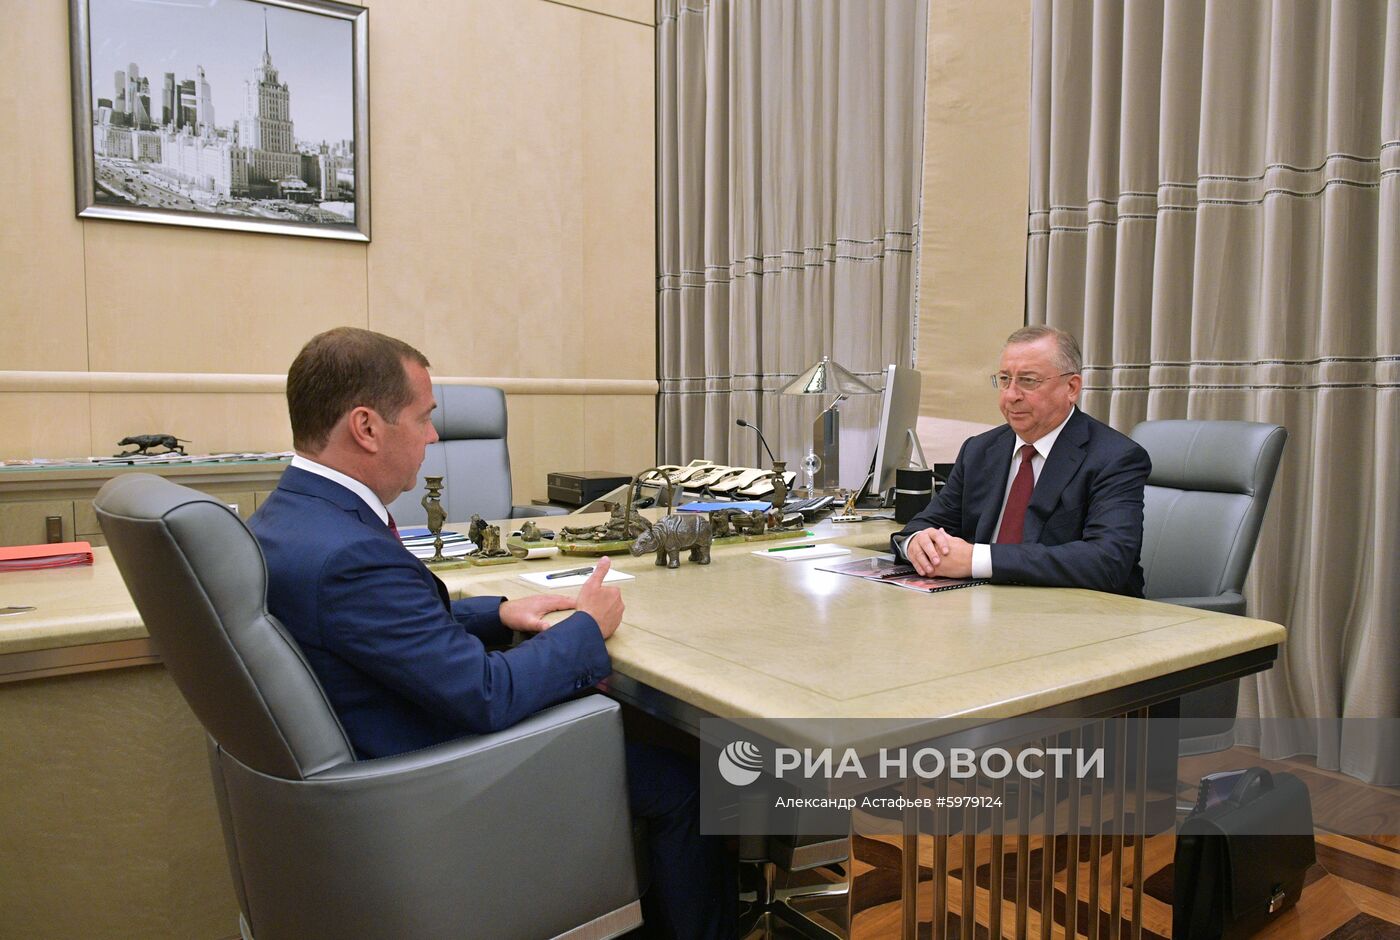 Премьер-министр РФ Д. Медведев встретился с главой ПАО "Транснефть" Н. Токаревым